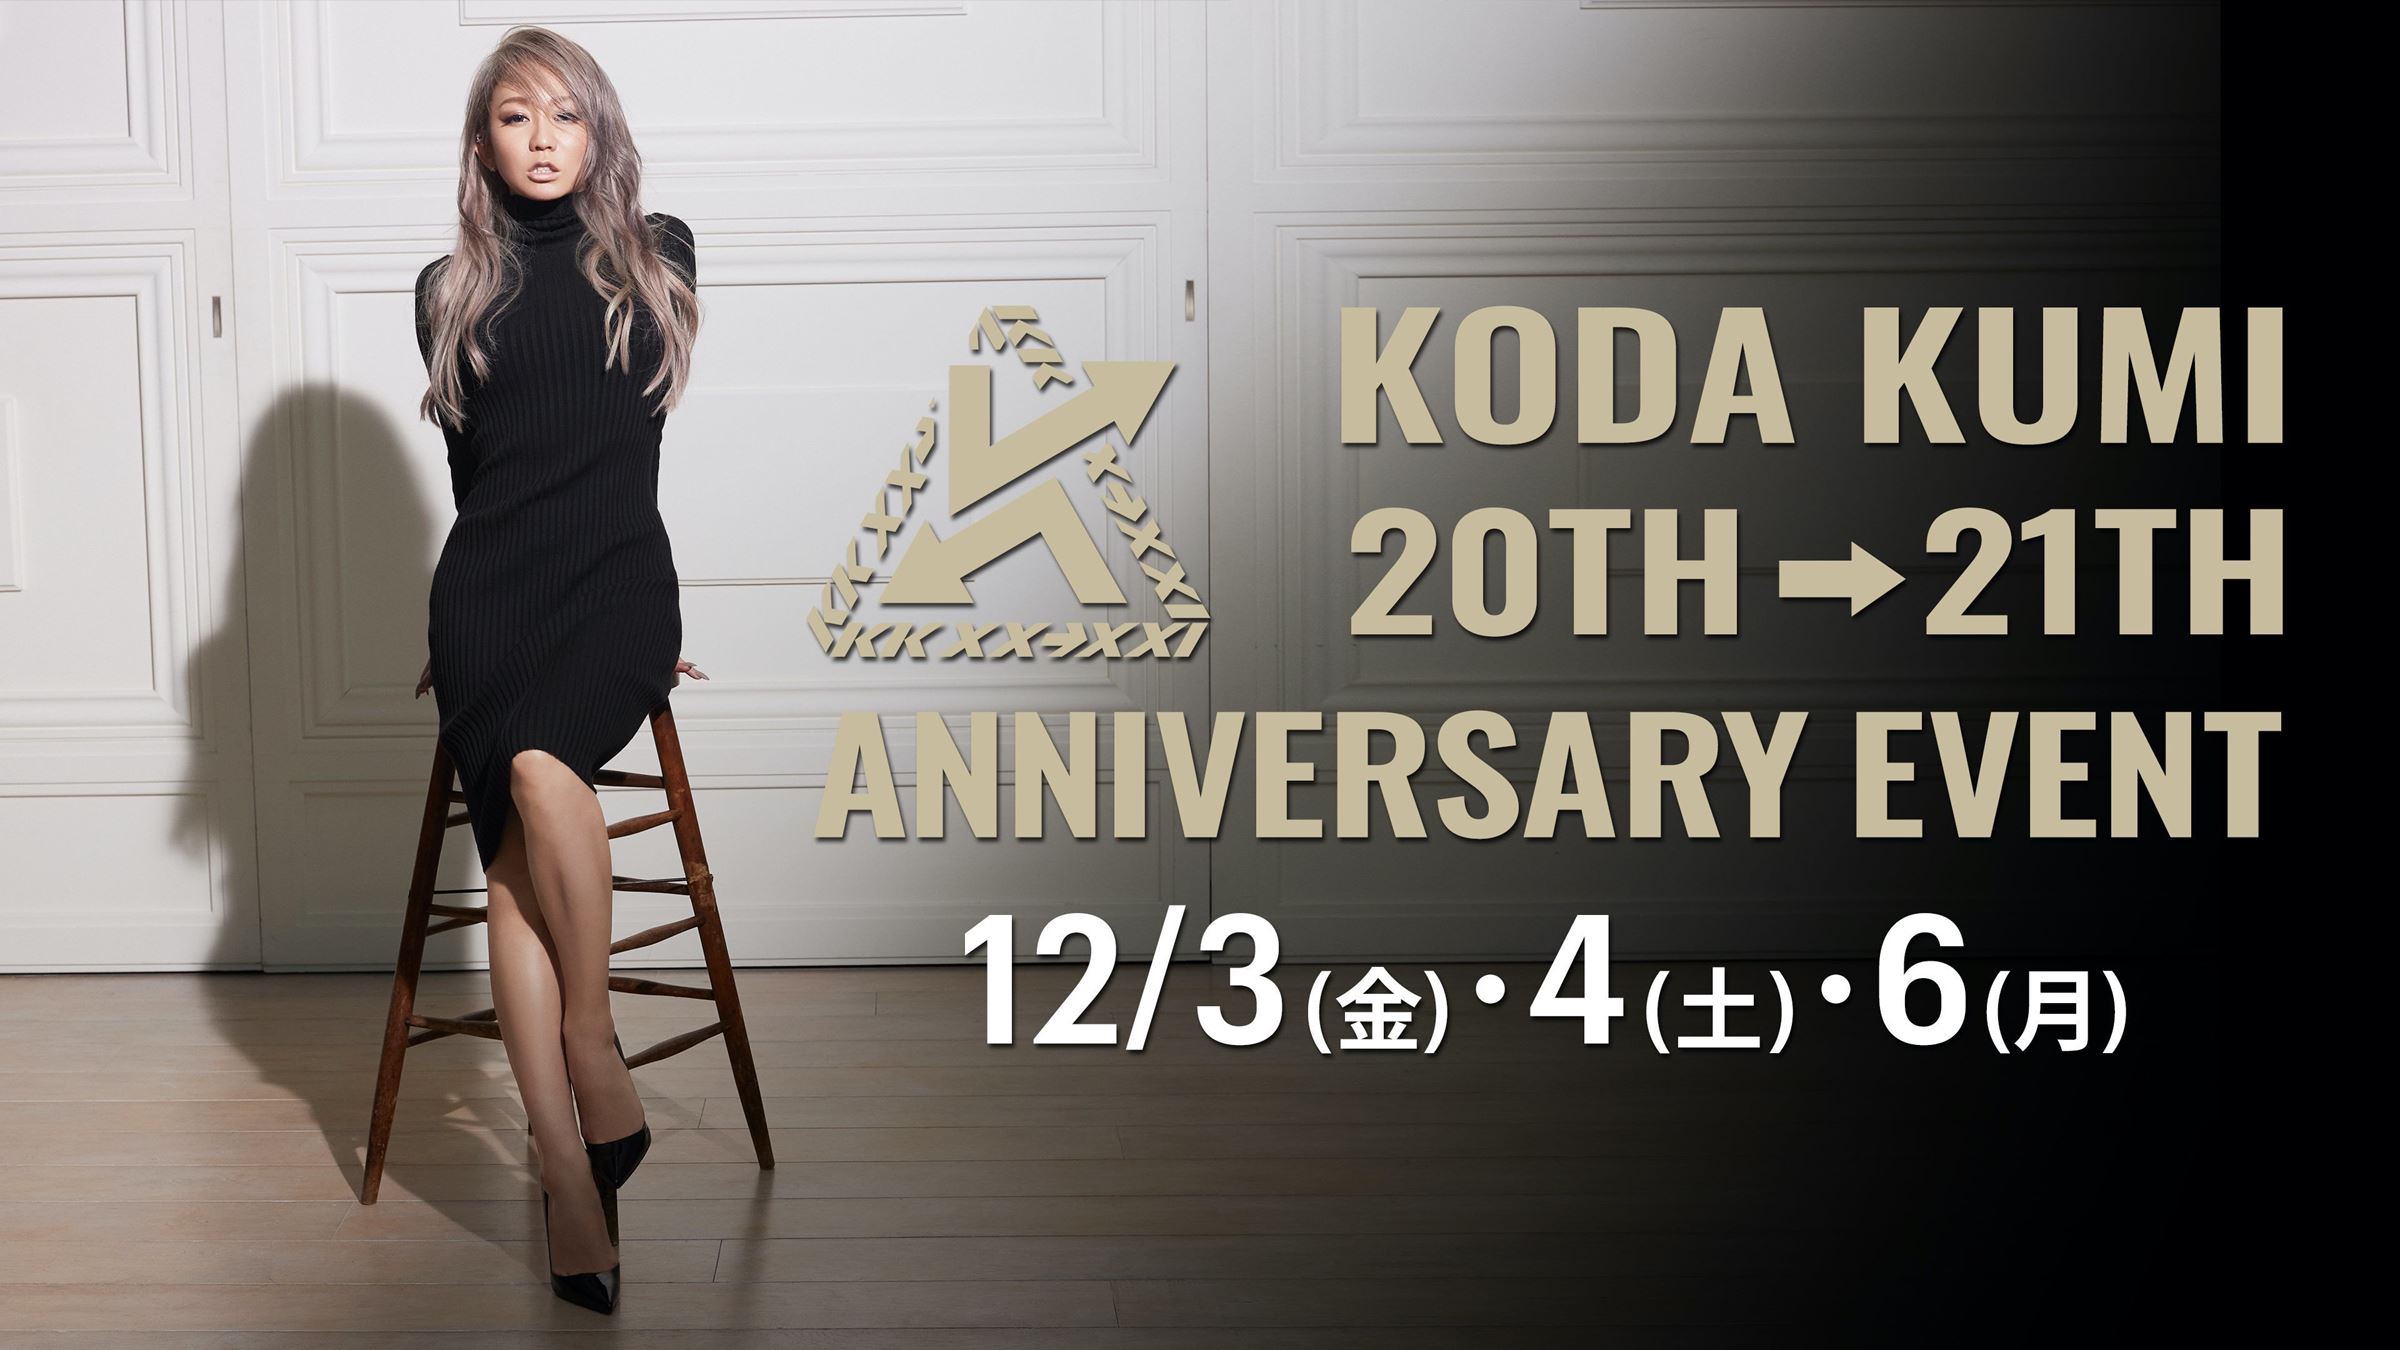 倖田來未『KODA KUMI 20TH→21ST ANNIVERSARY EVENT』